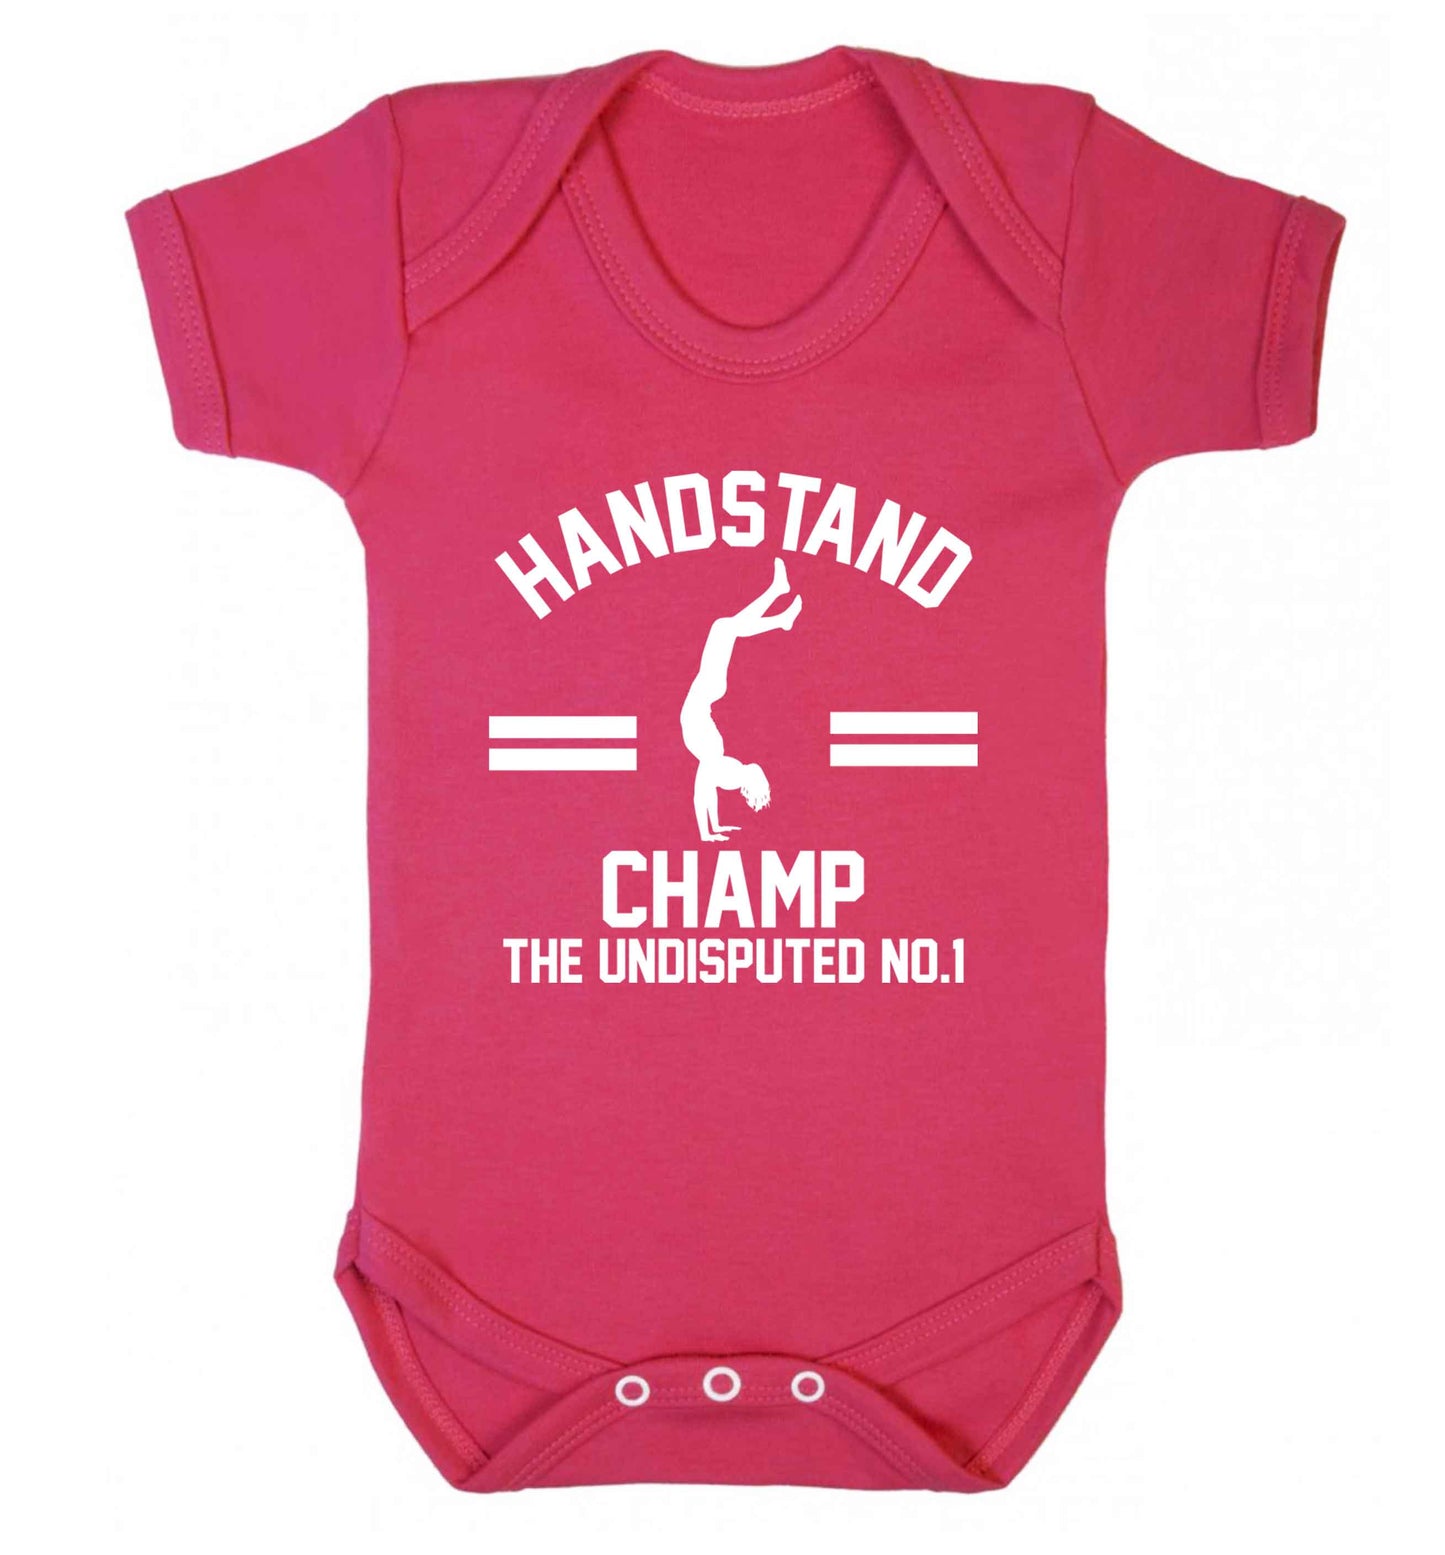 Undisputed handstand championship no.1  Baby Vest dark pink 18-24 months